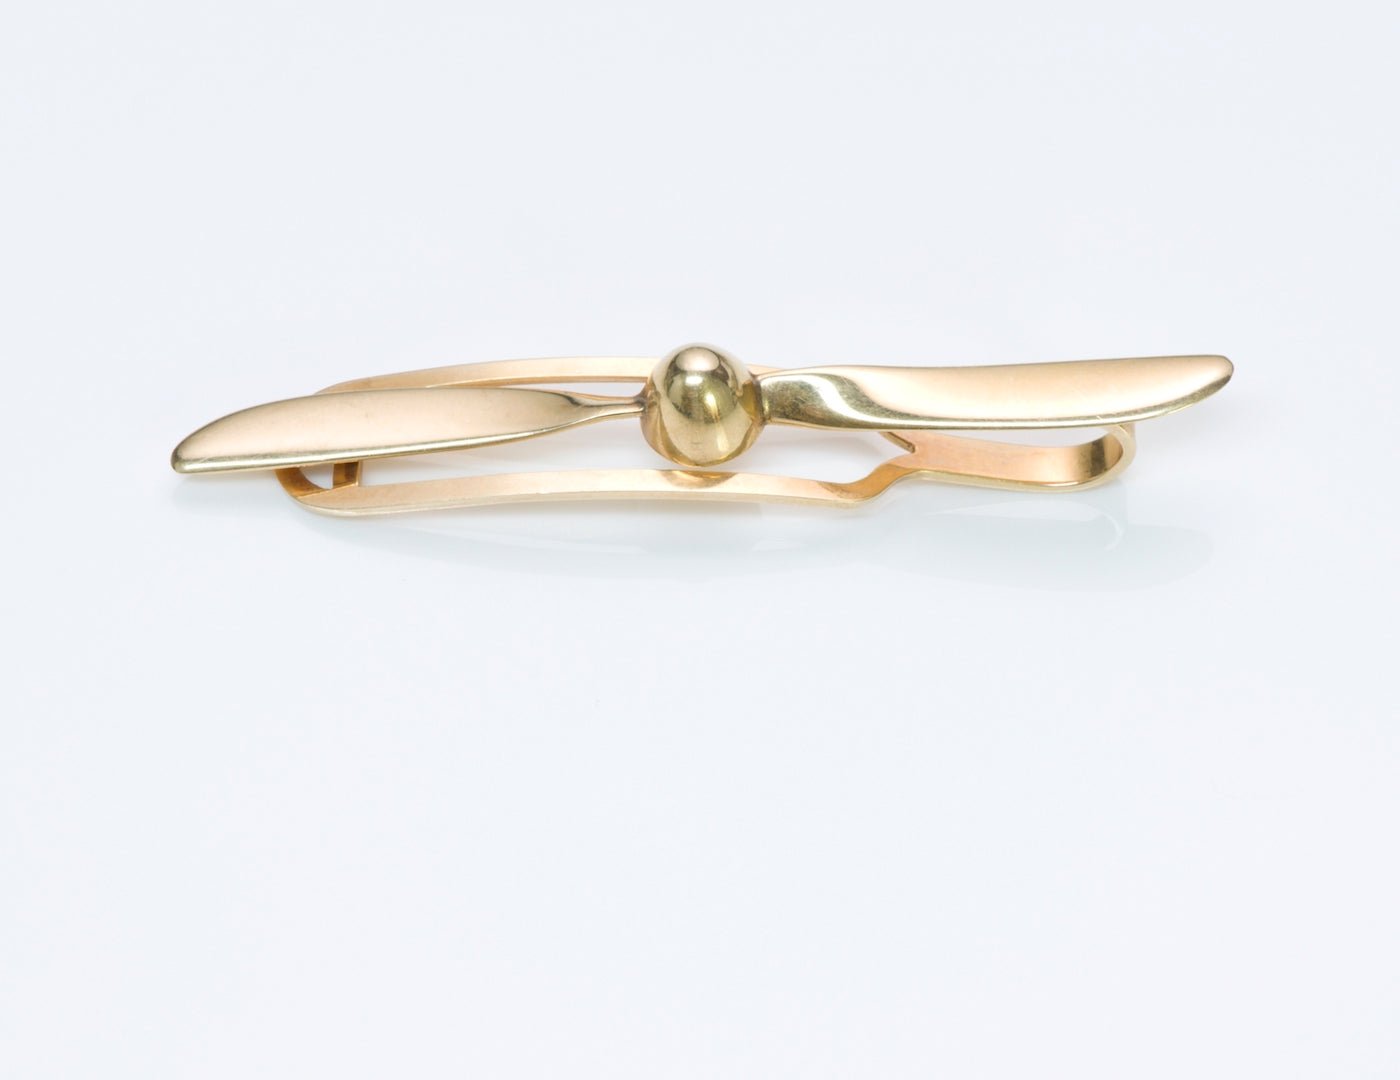 Gold Propeller Tie Bar Clip